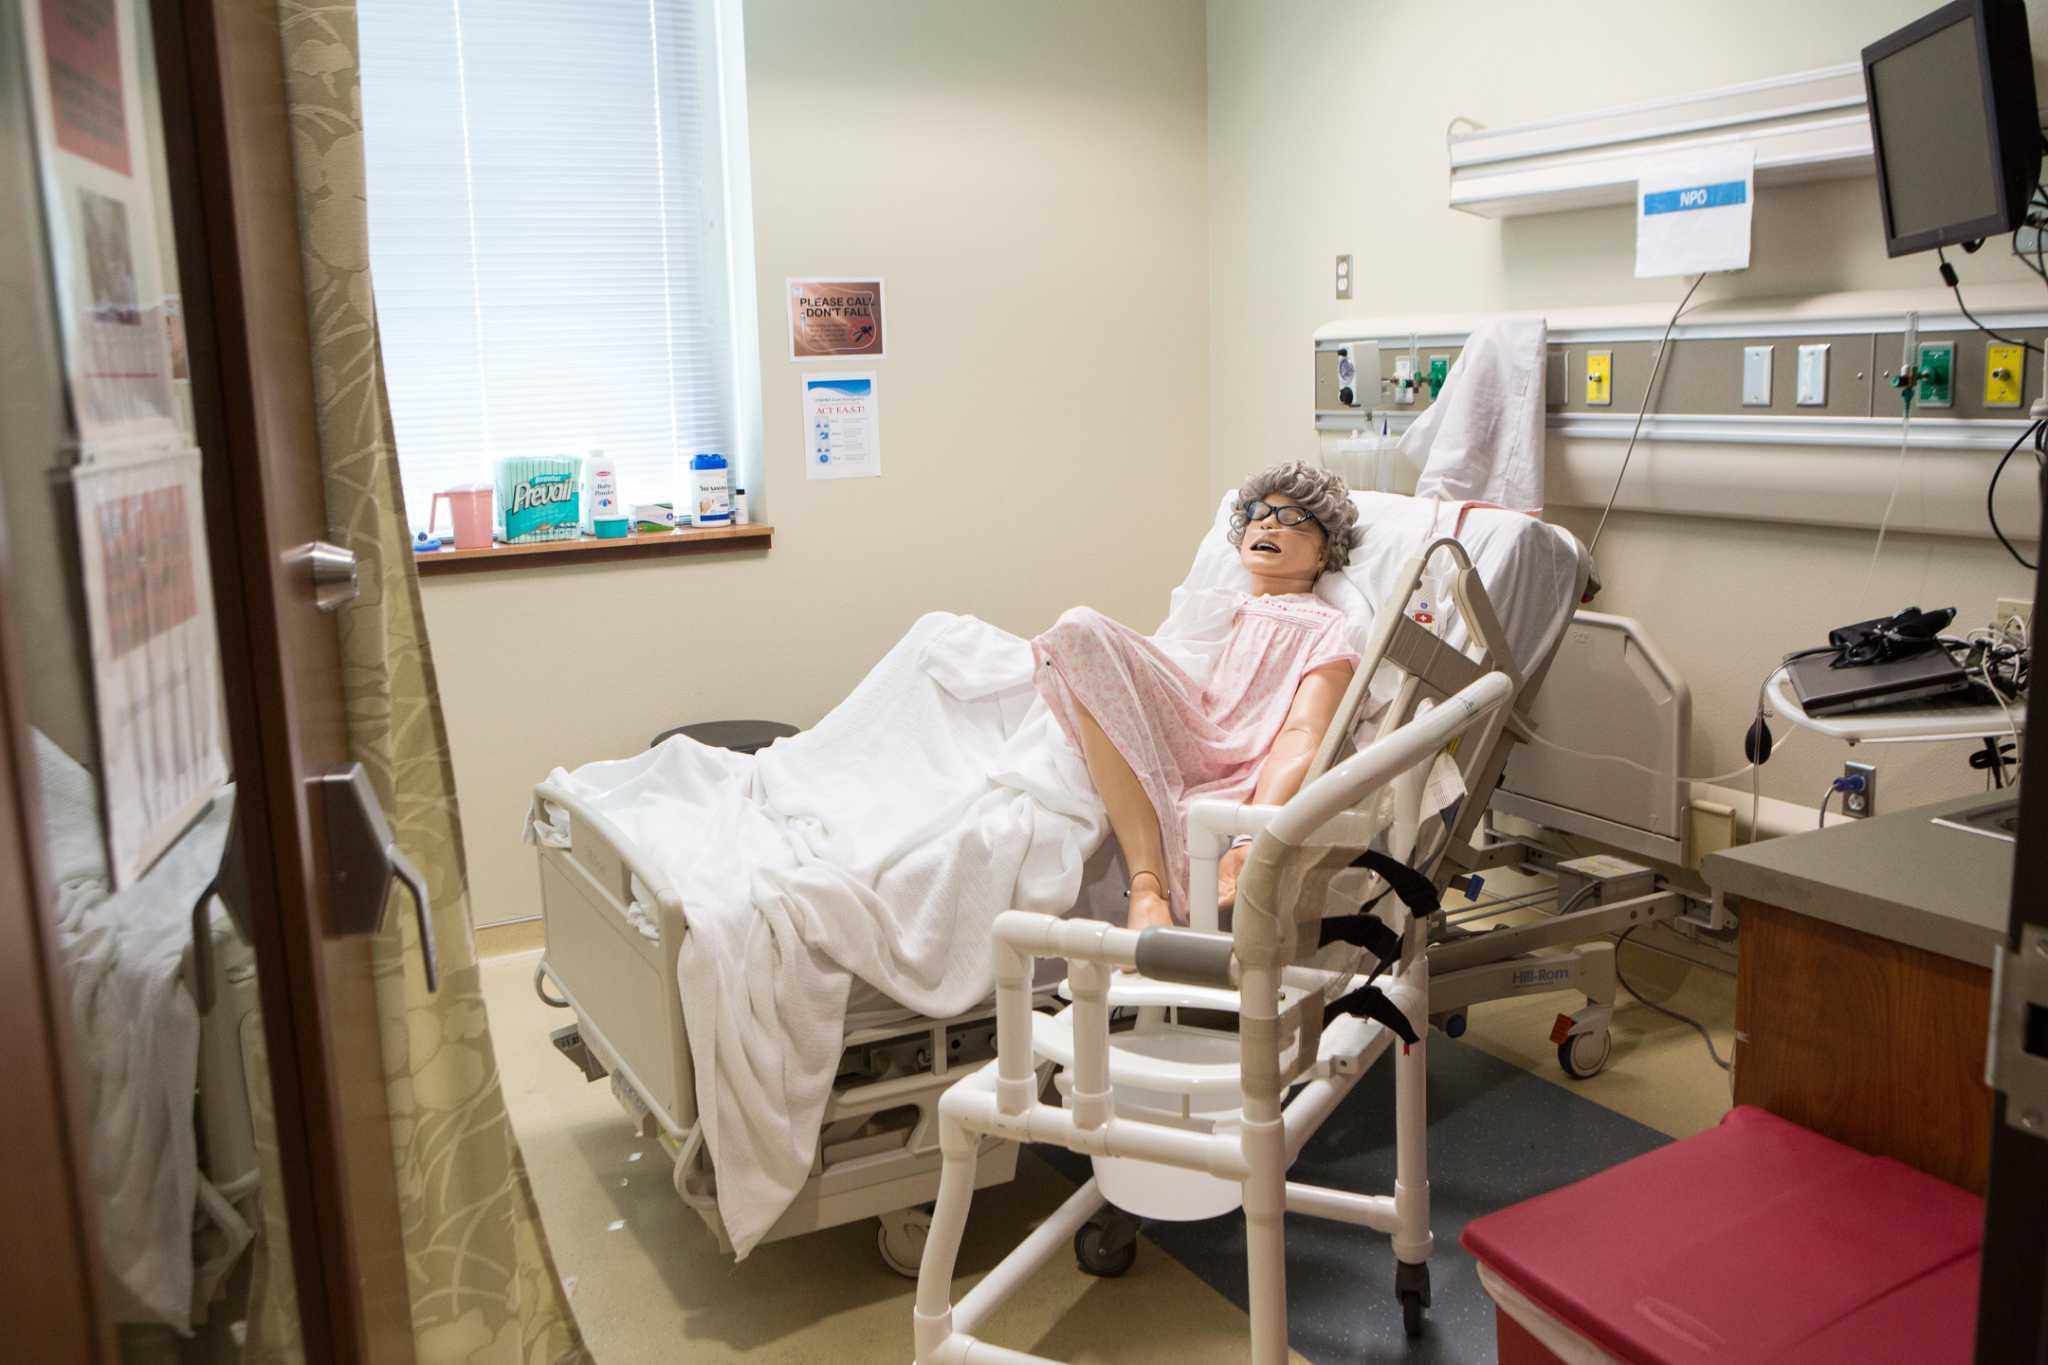 On 50th anniversary, San Antonio College's nursing program looks ahead